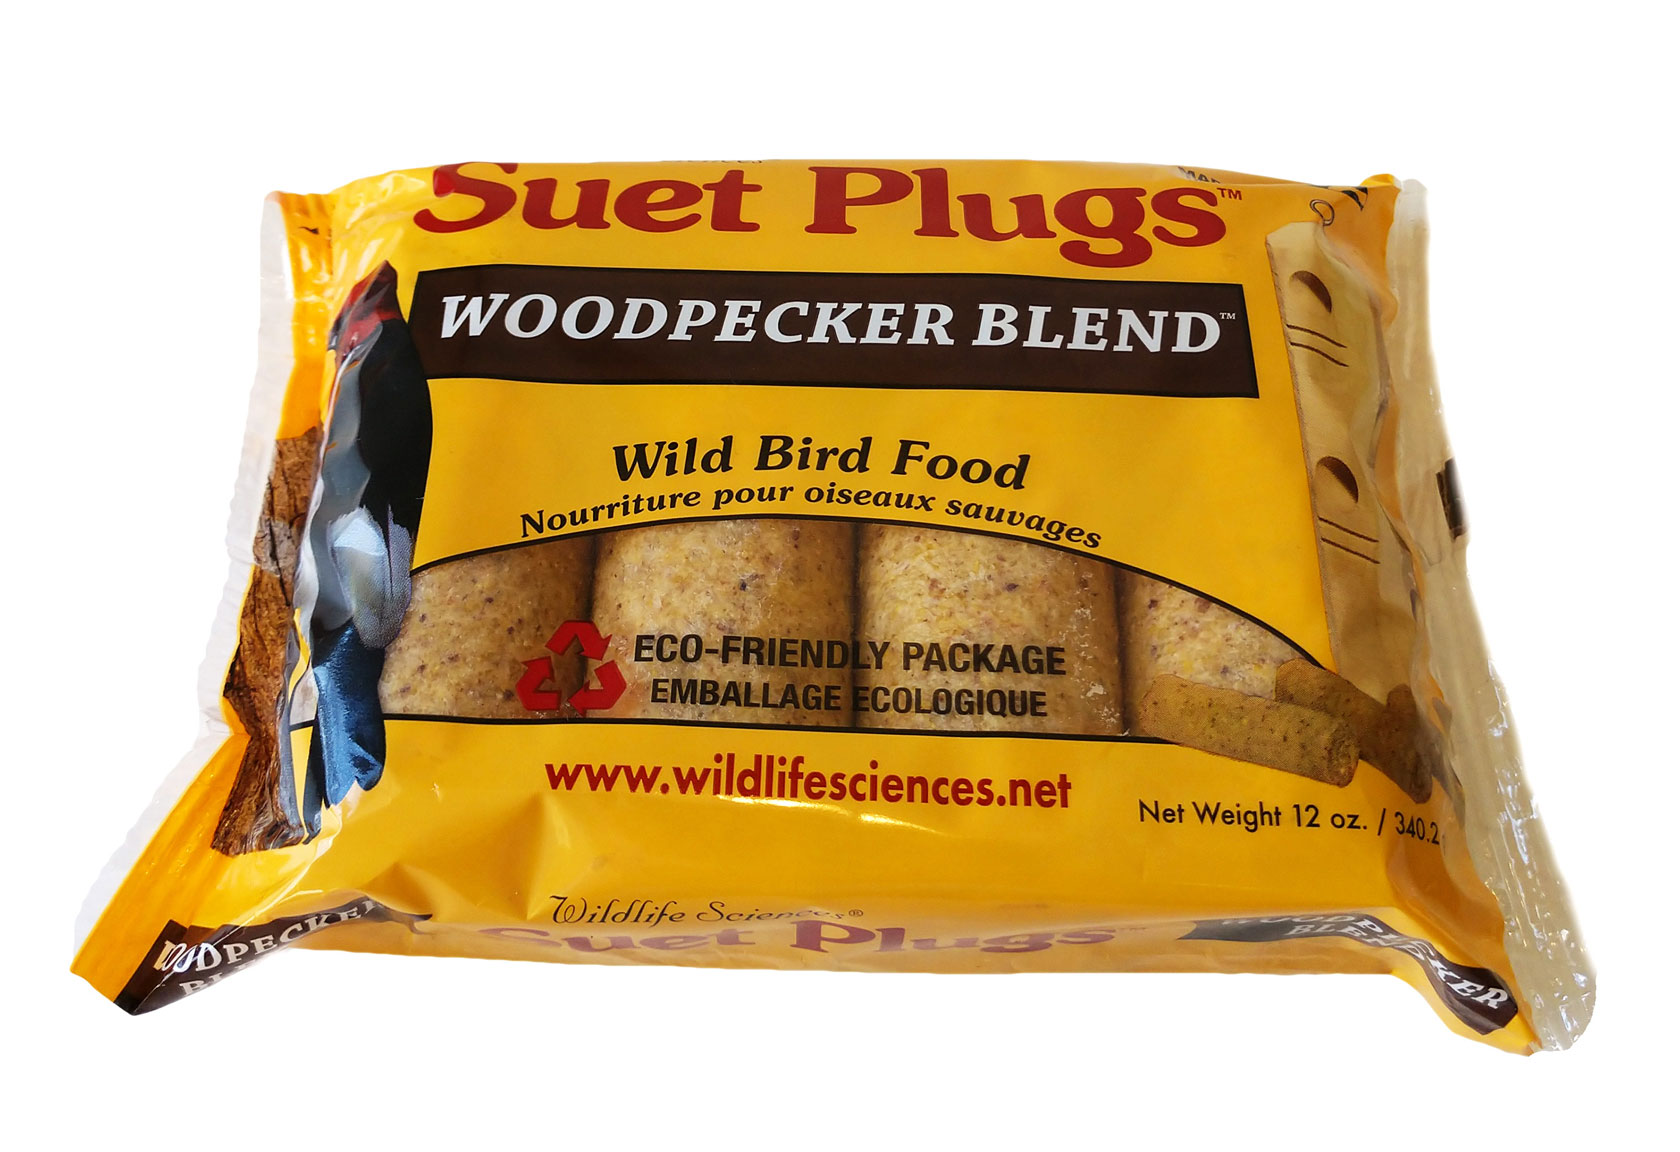 Woodpecker Blend Suet Plugs